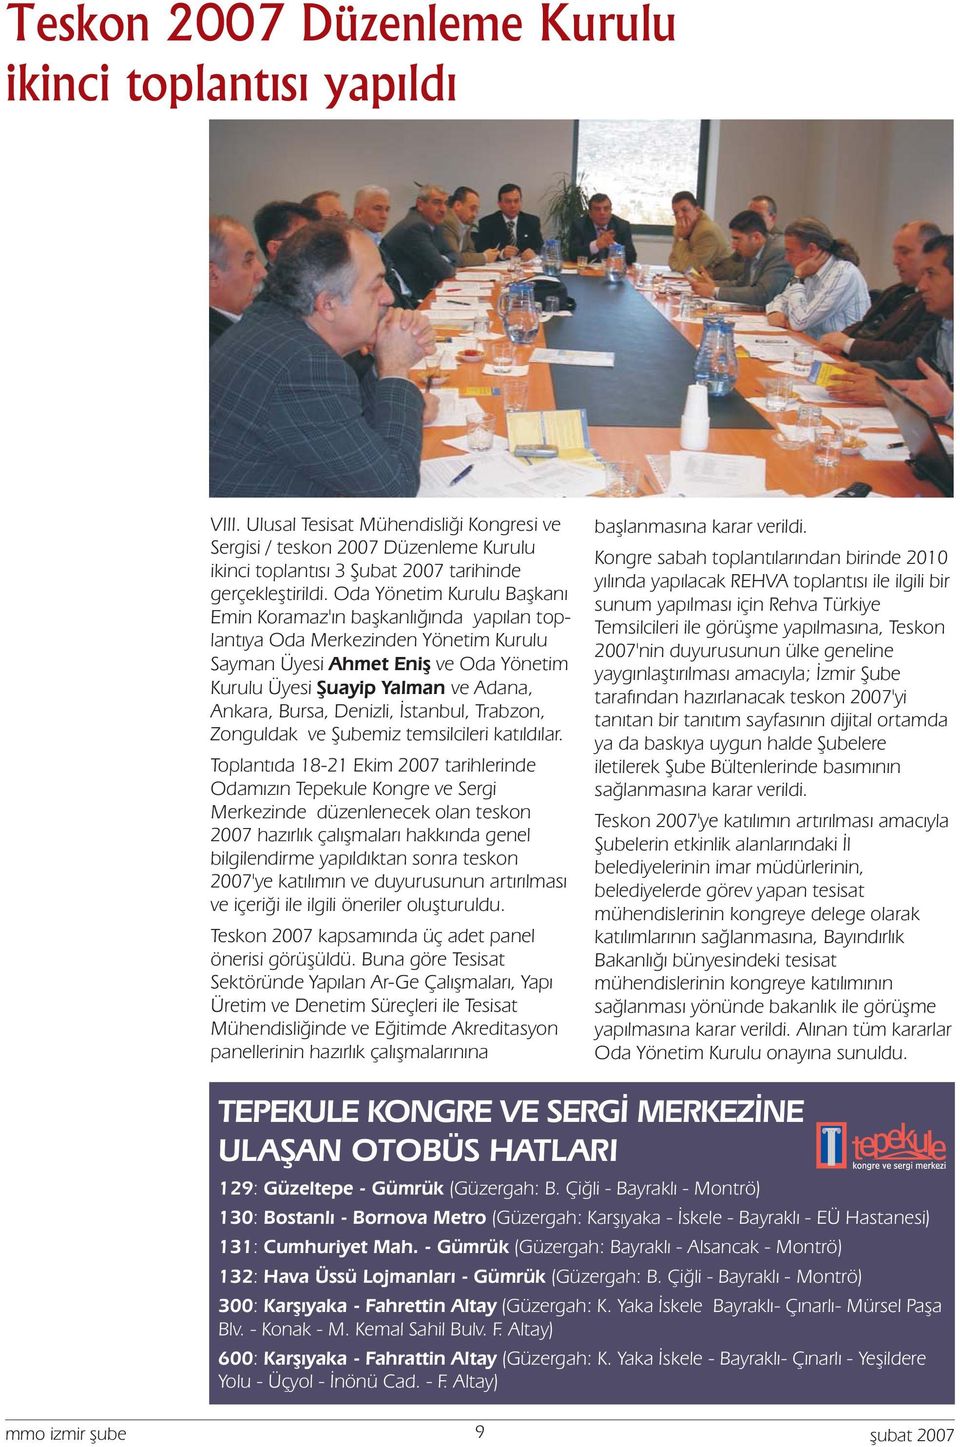 Denizli, İstanbul, Trabzon, Zonguldak ve Şubemiz temsilcileri katıldılar.